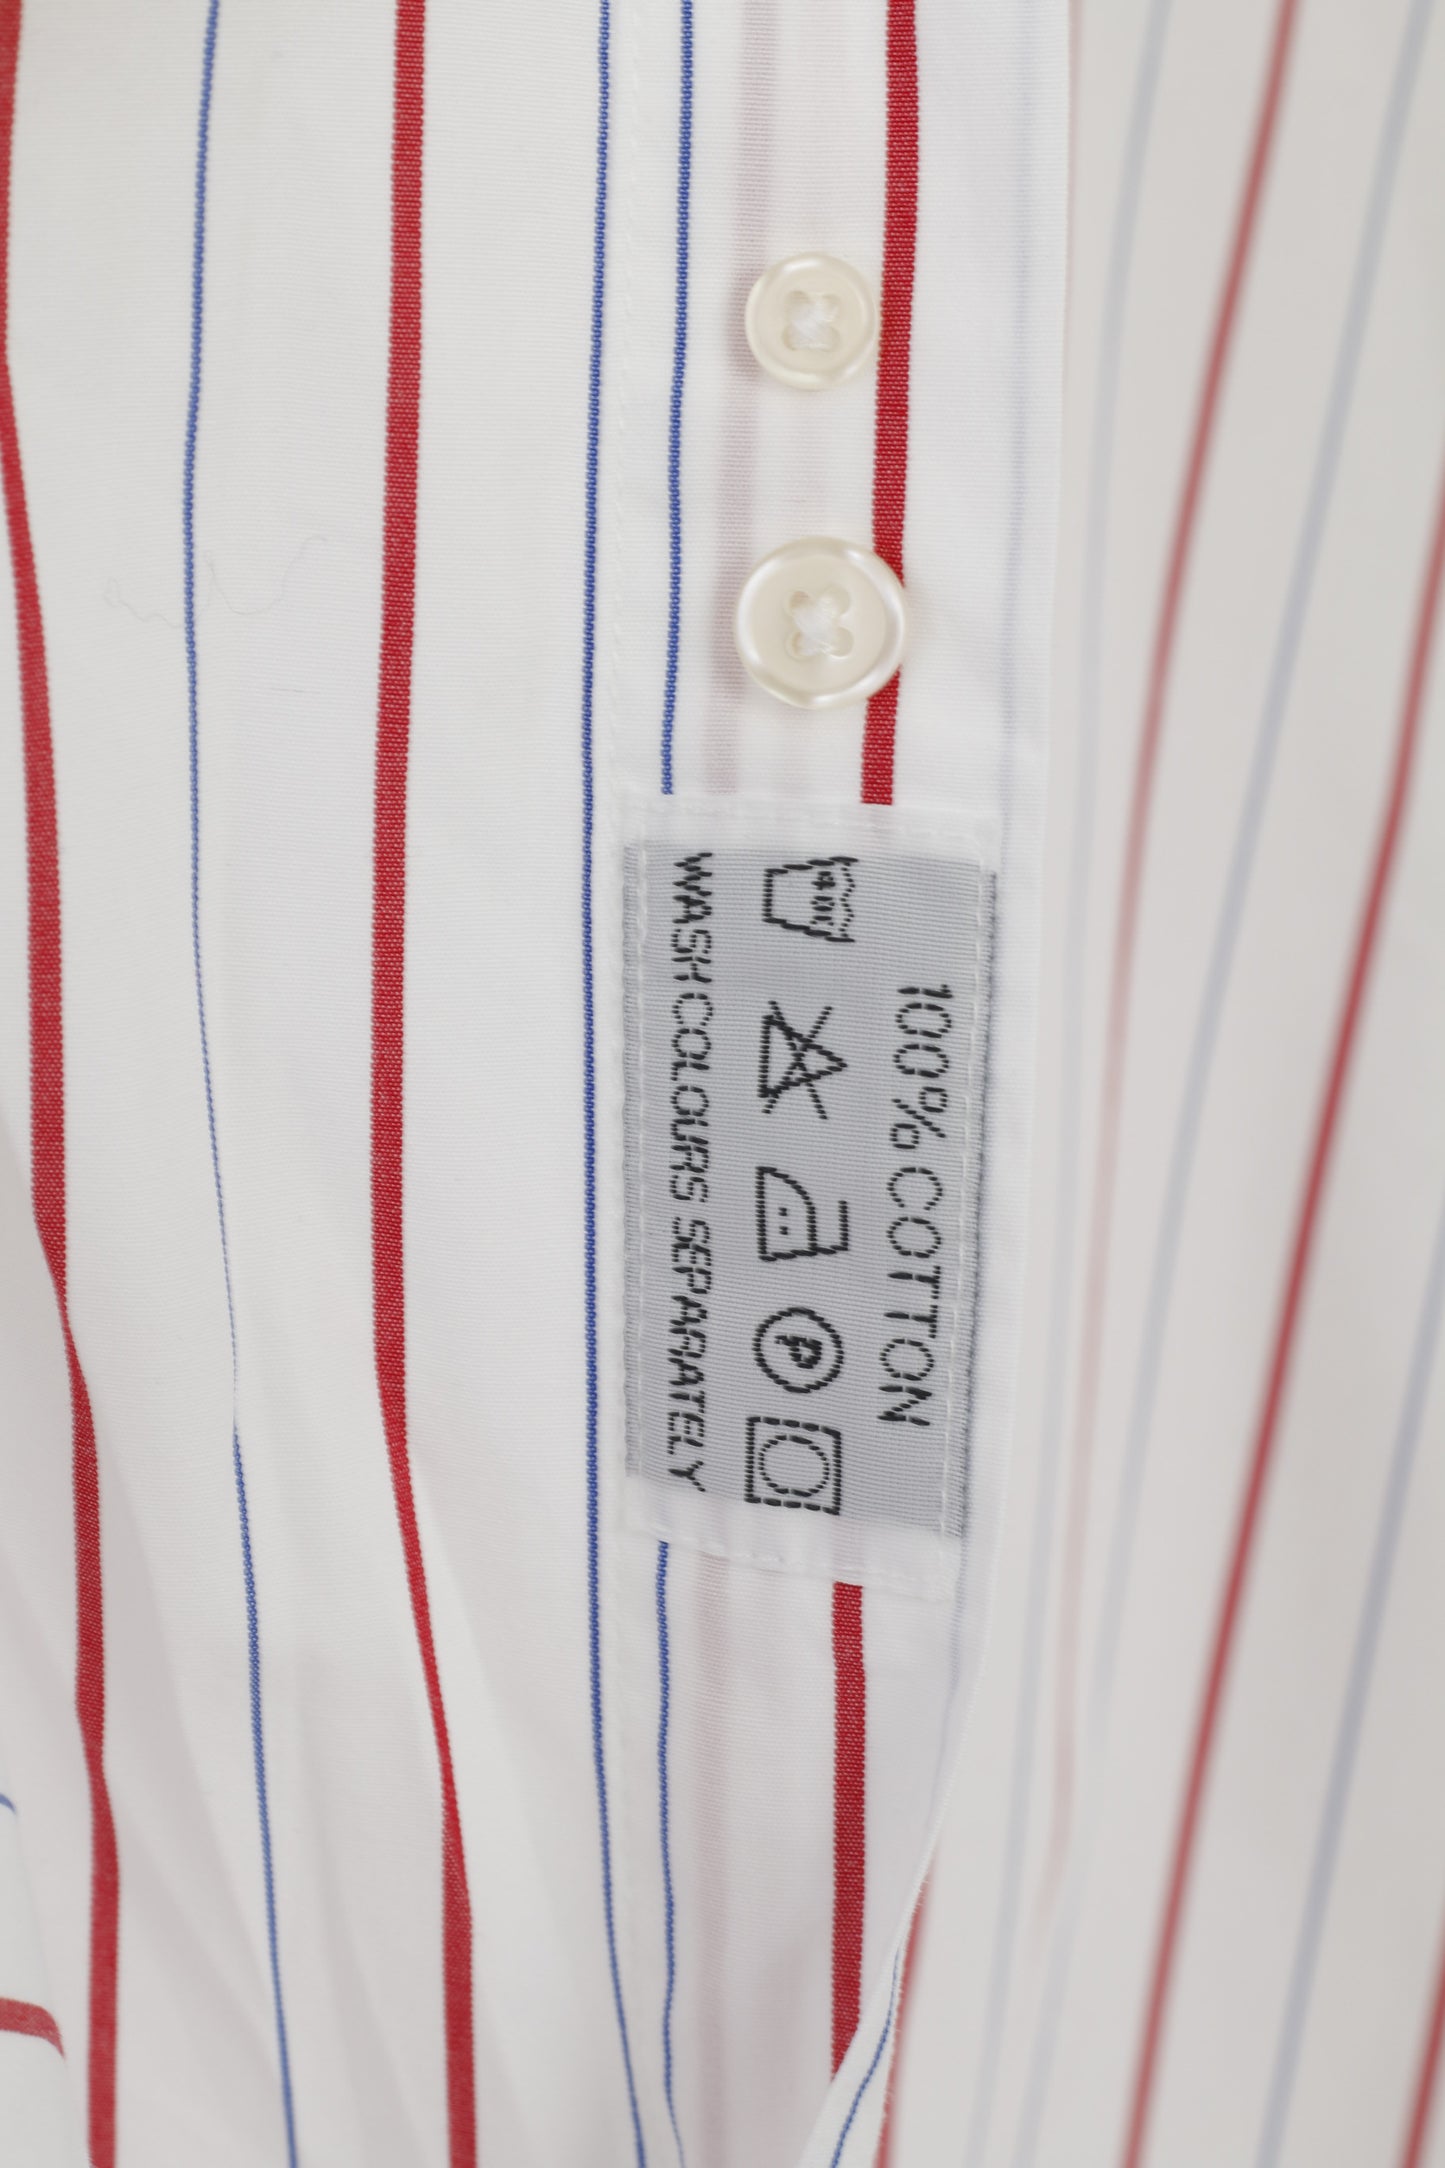 Samuel Windsor Uomo 16.5 42 XL Camicia casual Top a maniche lunghe a righe in cotone bianco